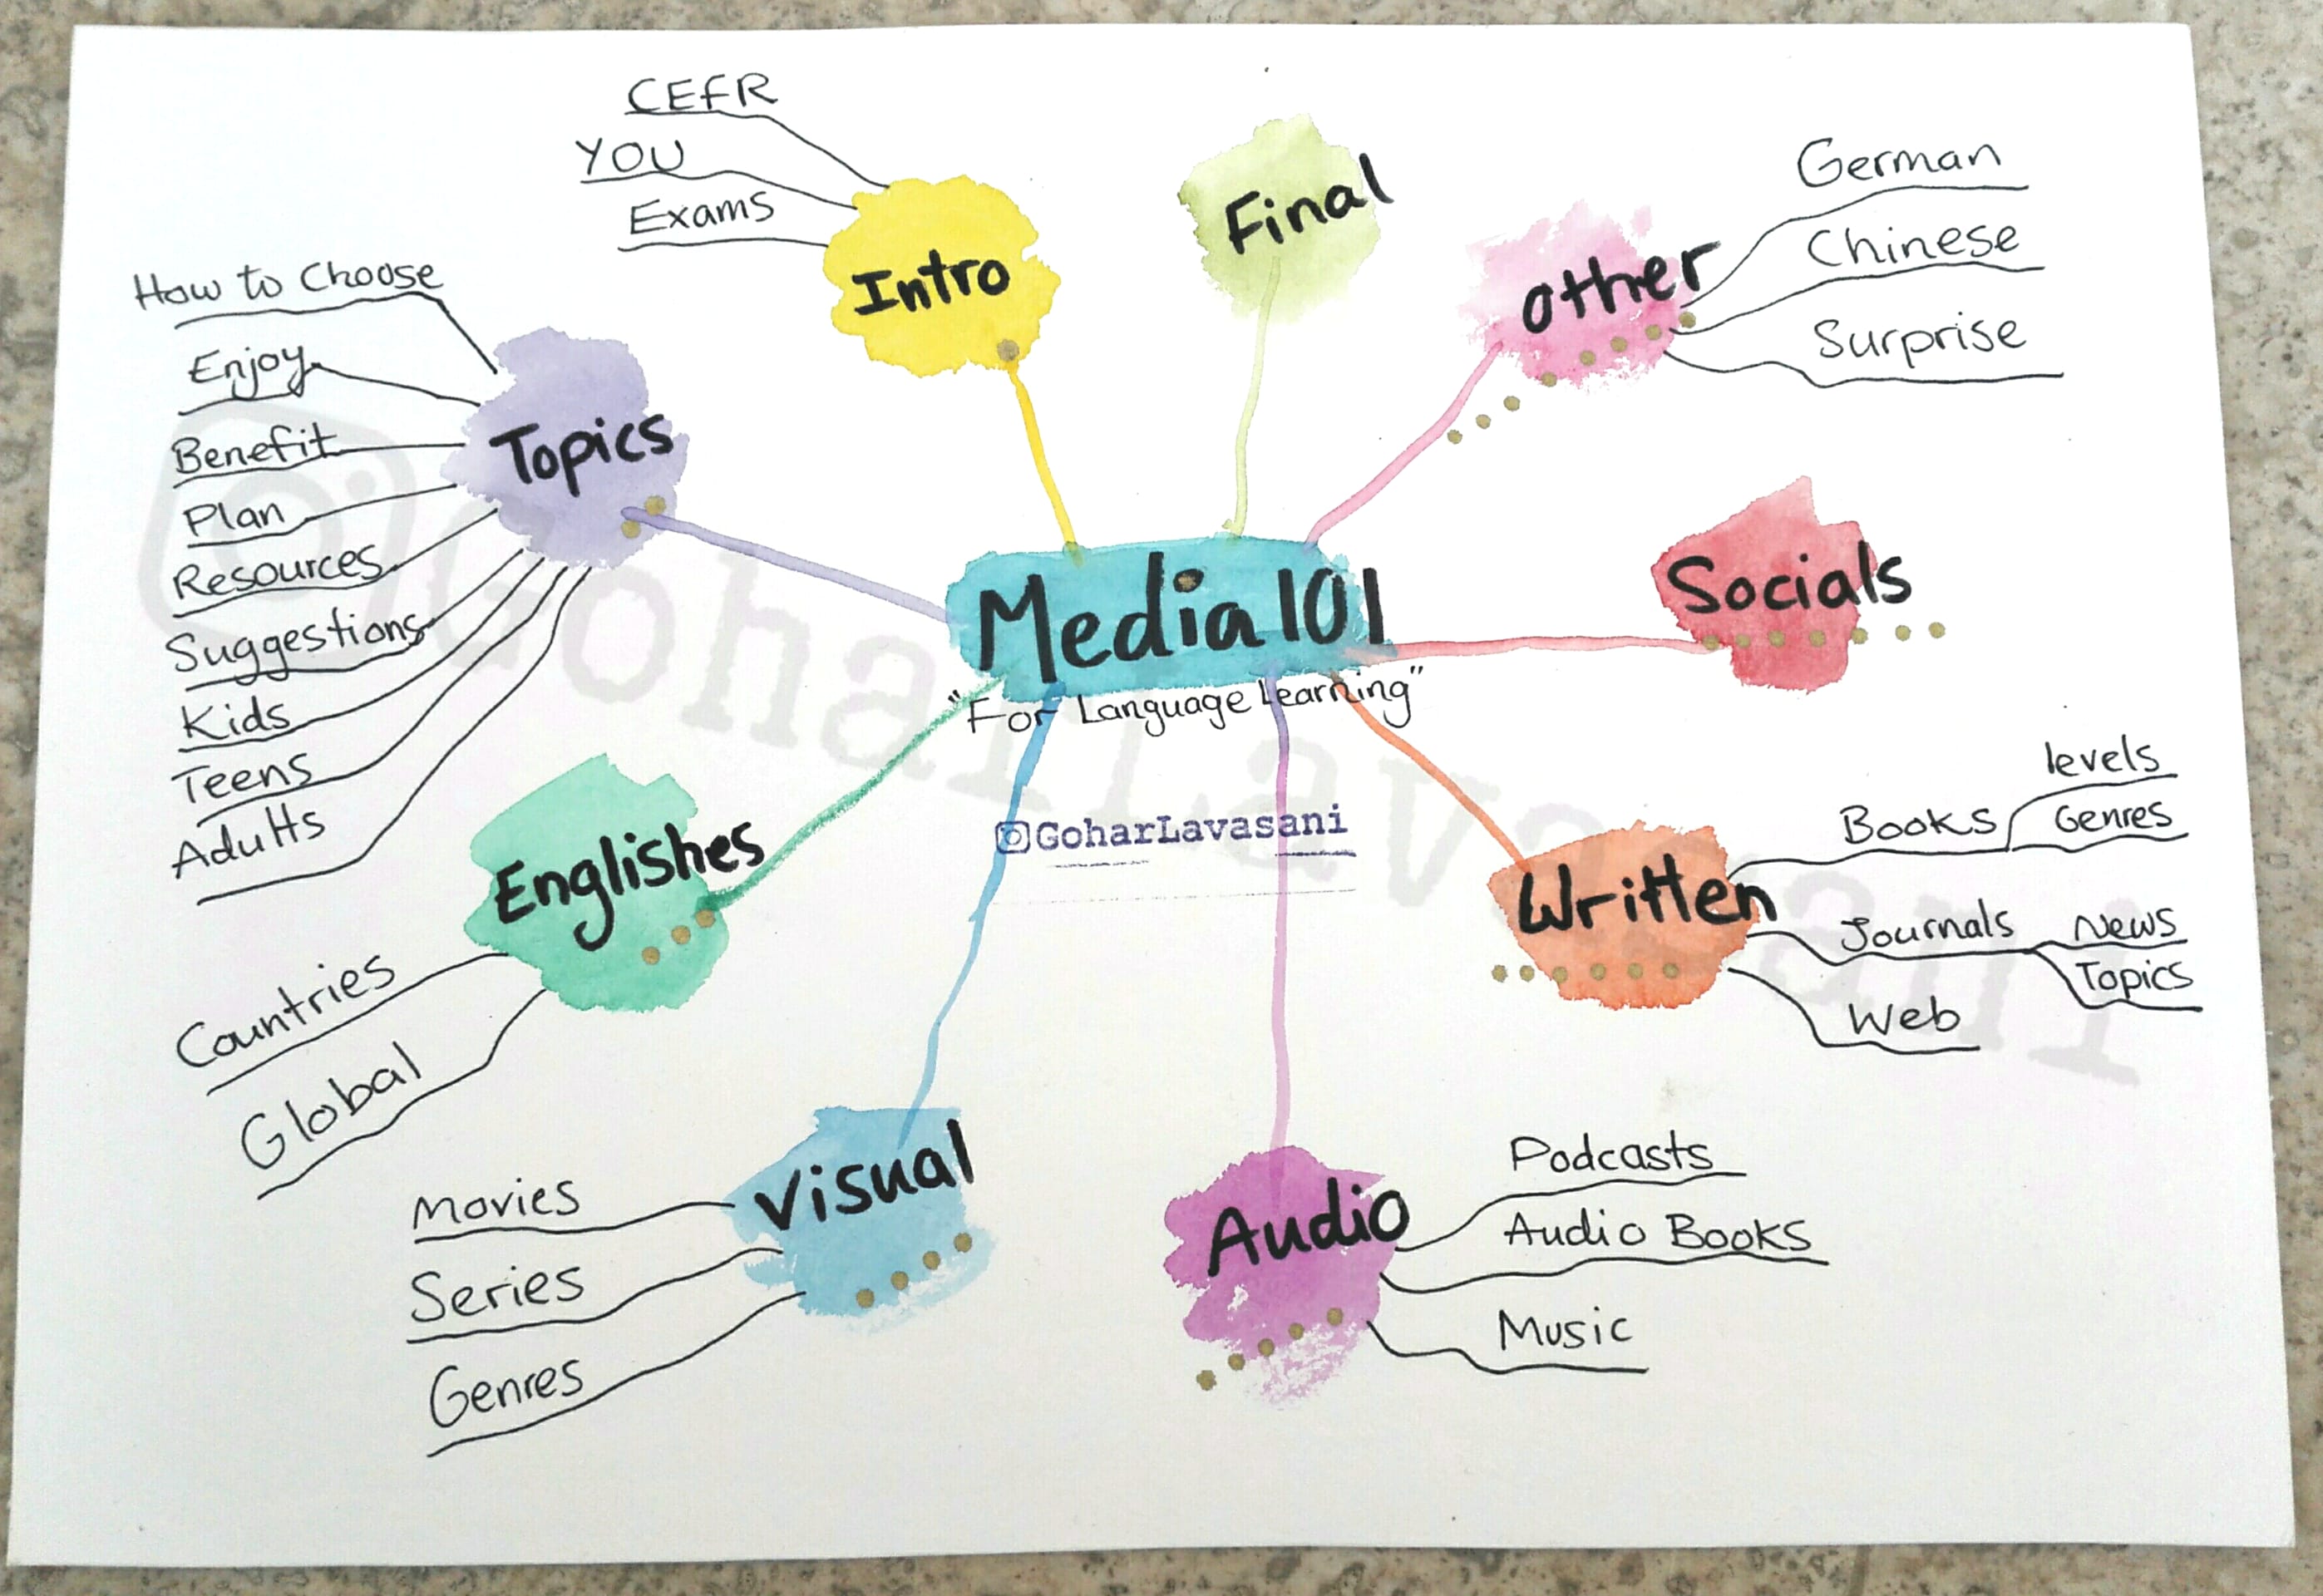 Media 101 Topics Mind Map